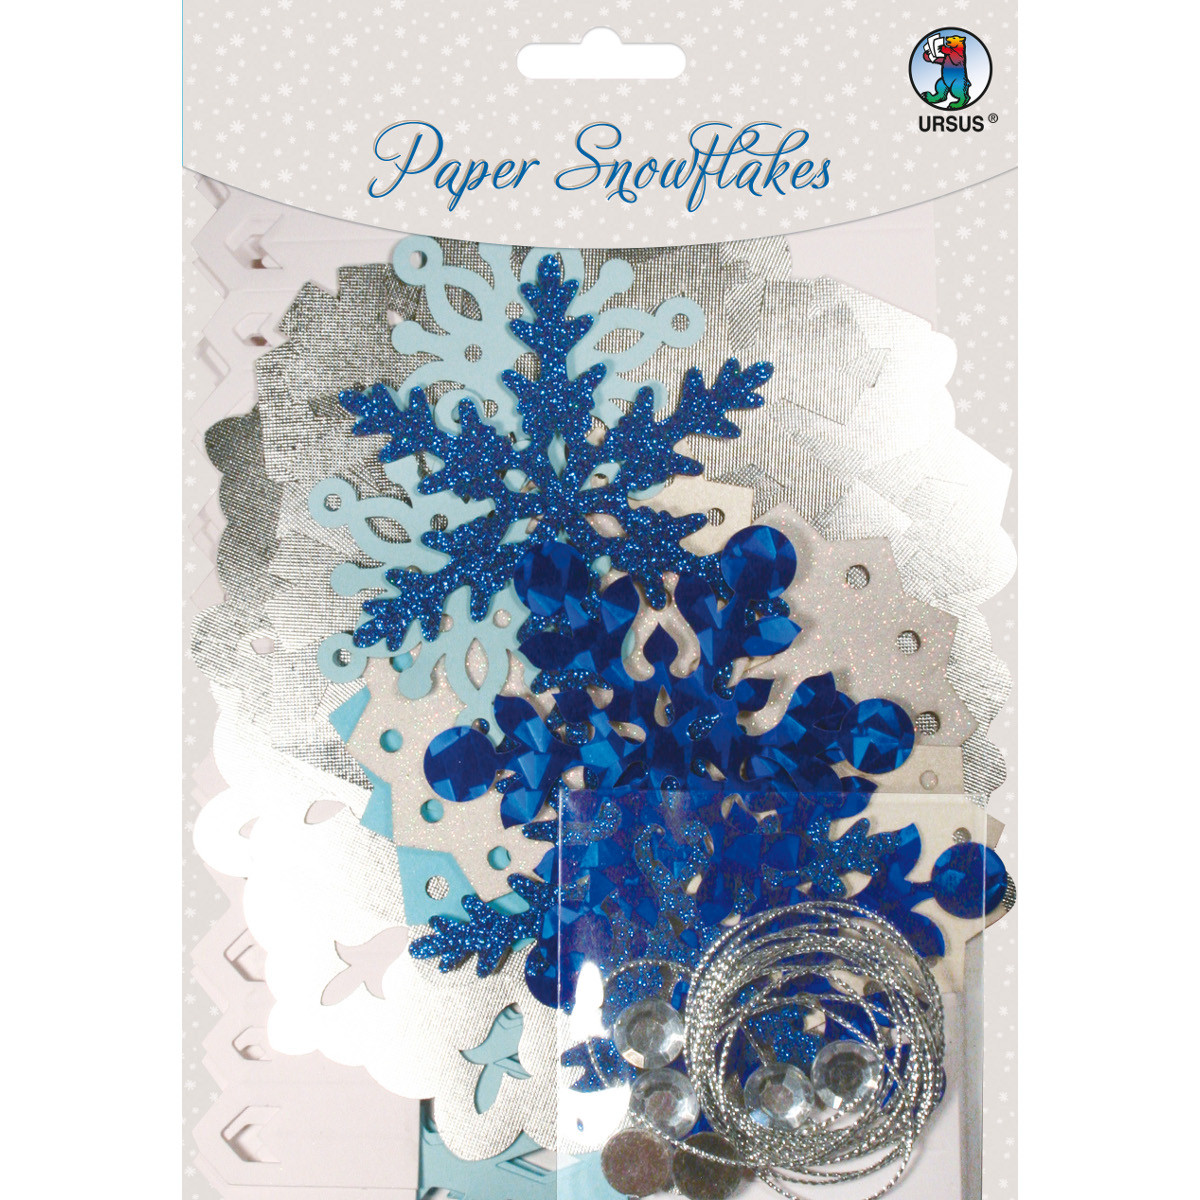 URSUS® Paper Snowflakes blau